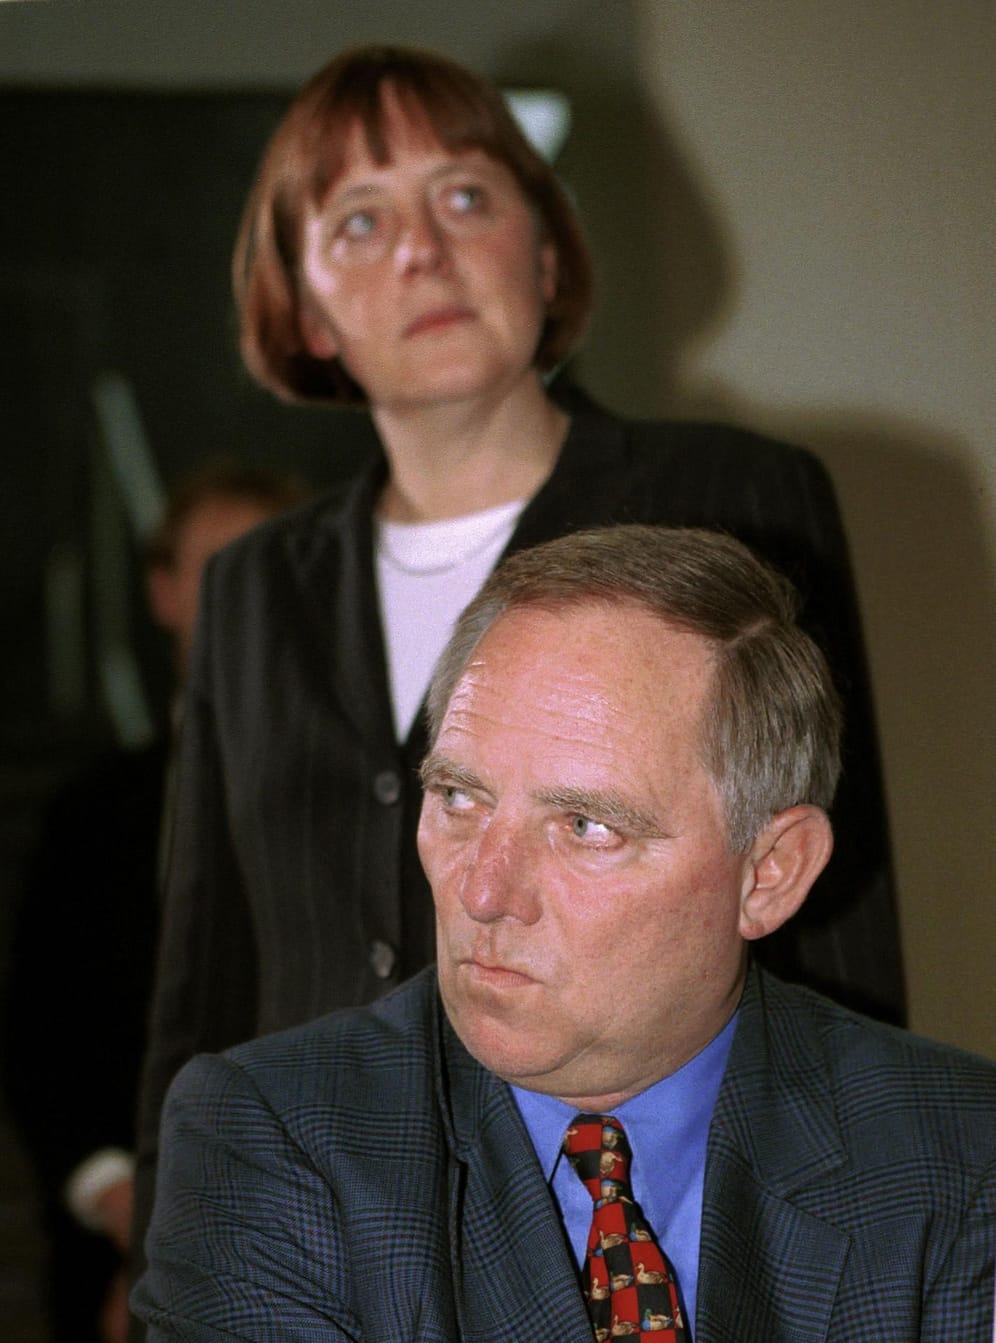 Nach dem Debakel für die CDU bei der Bundestagswahl 1998 wurde Wolfgang Schäuble CDU-Vorsitzender und Angela Merkel seine Generalsekretärin. Nach der CDU-Spendenaffäre war sie es, die in einem Gastbeitrag in der FAZ unabgesprochen eine Abnabelung von Kohl forderte und damit auch Schäuble vor den Kopf stieß.